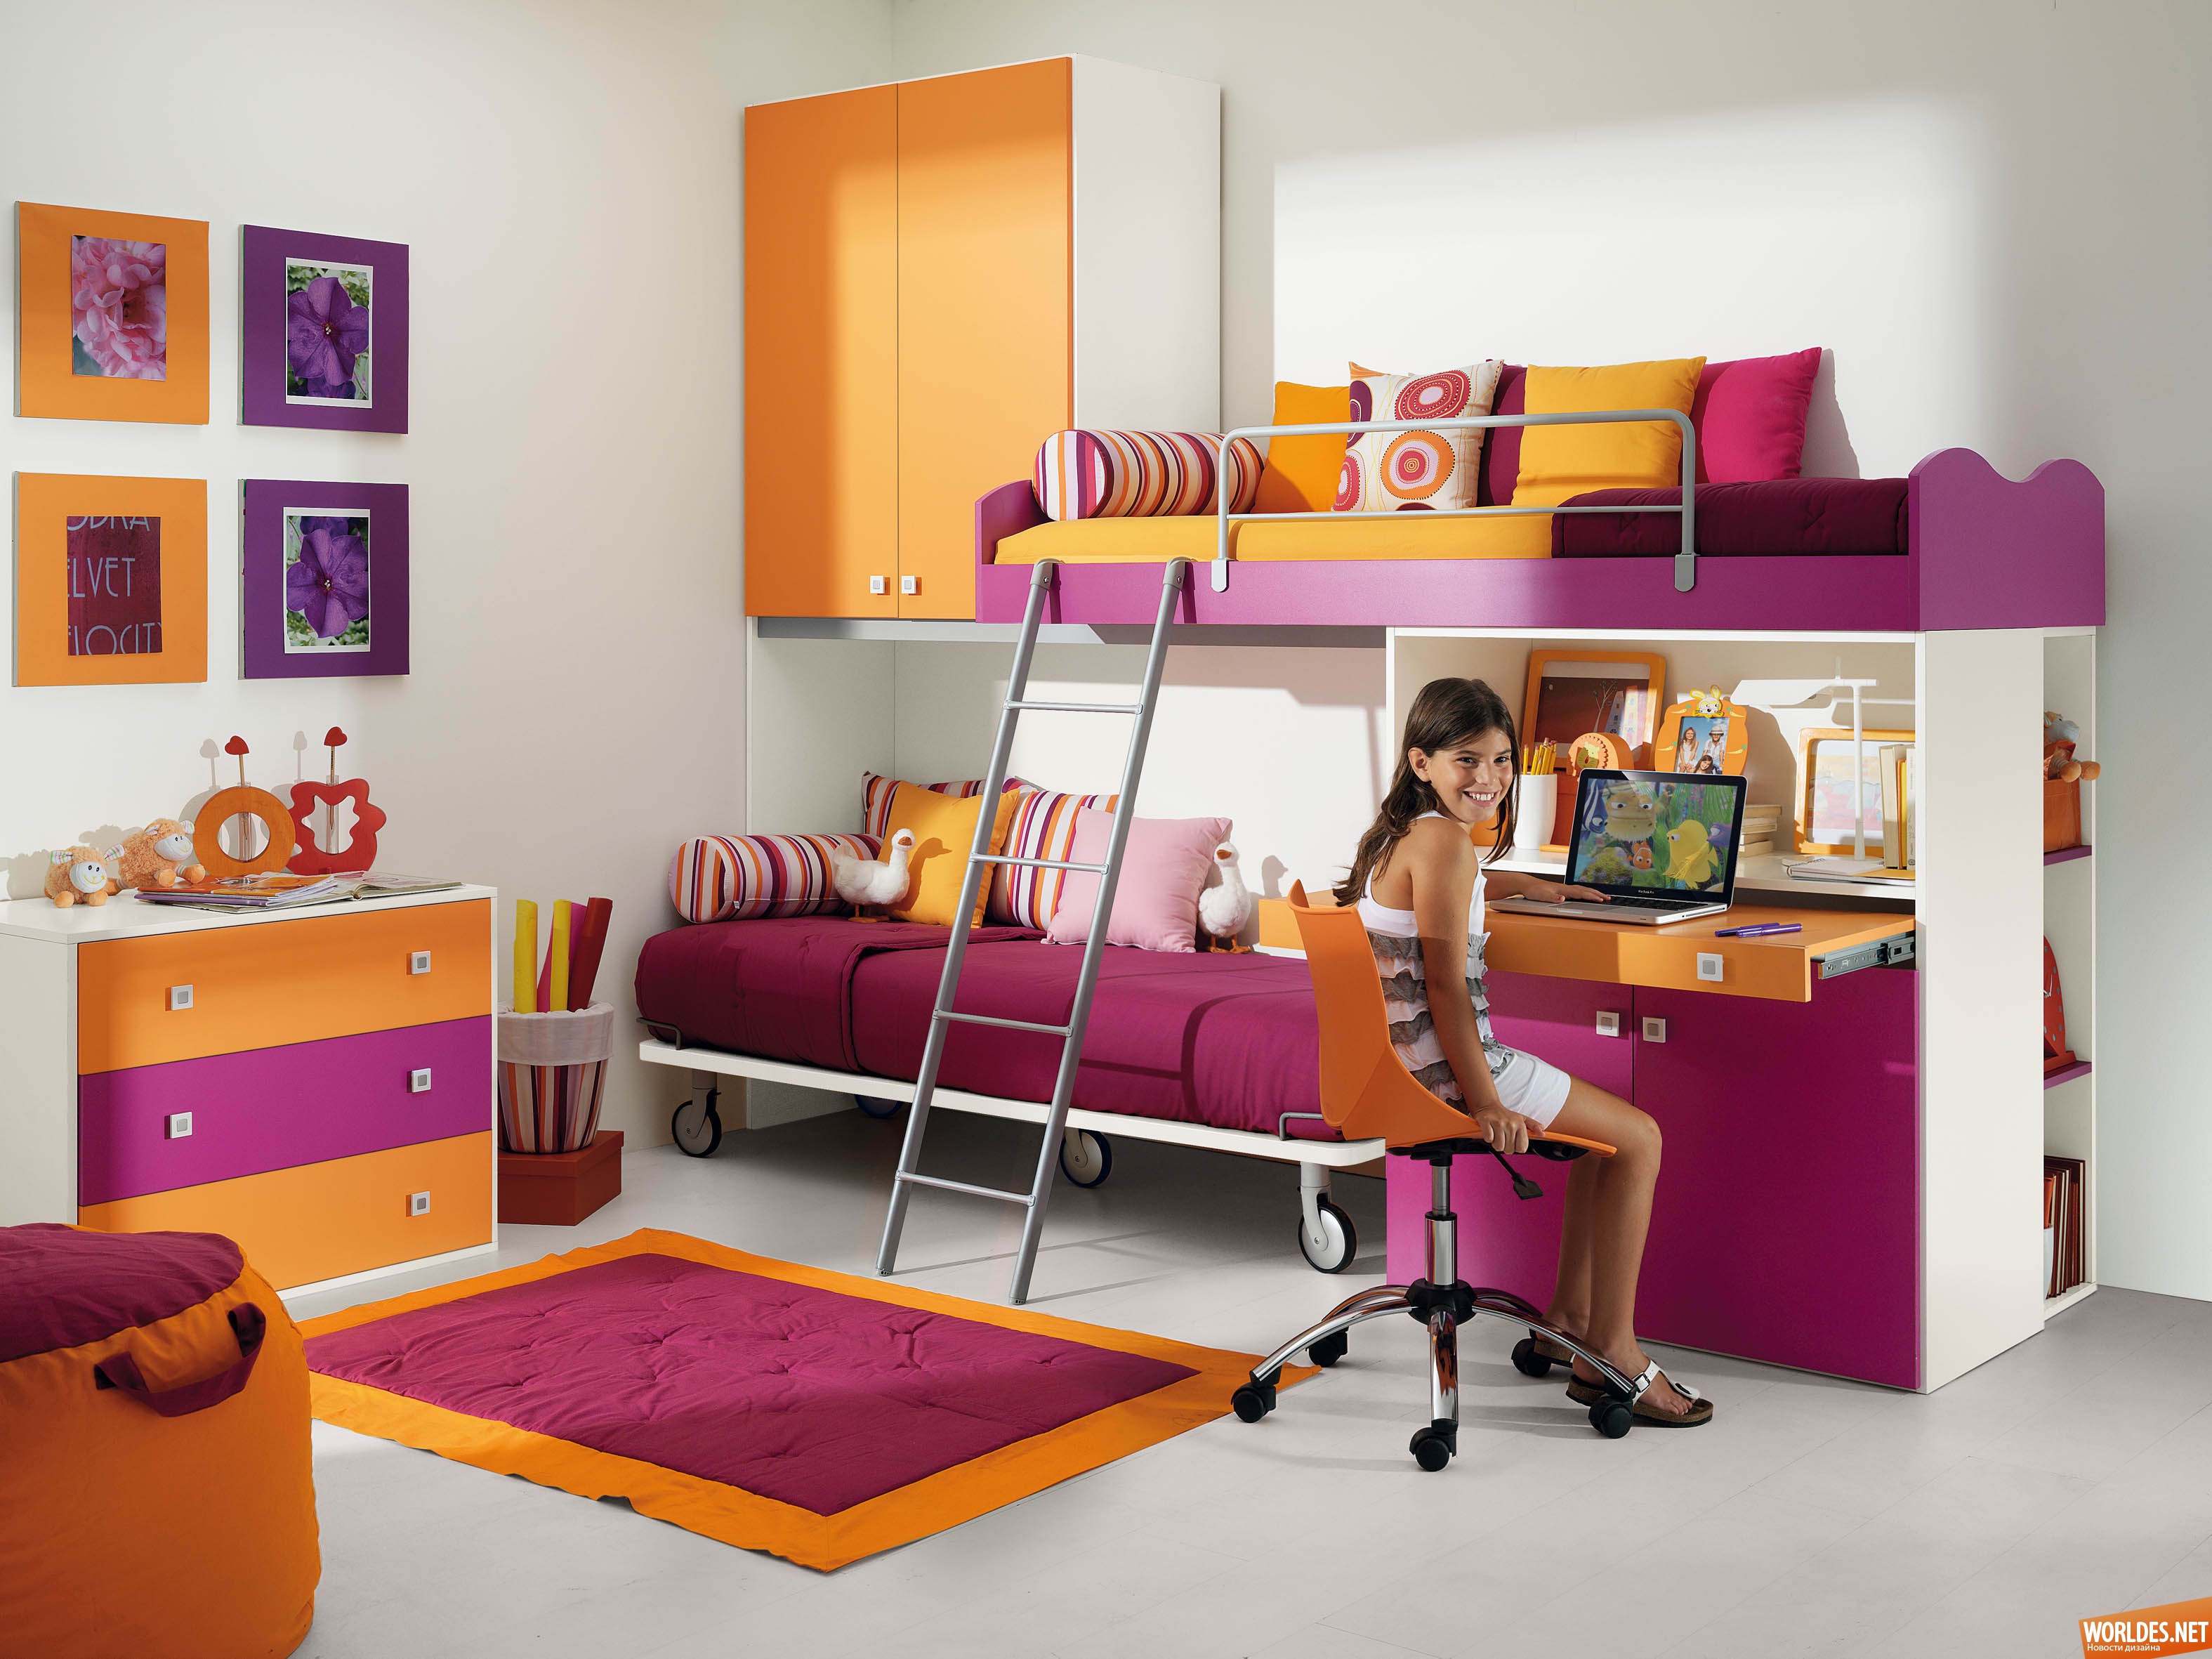 мебель для детской комнаты, детские комнаты мебель для девочек, мебель для детской комнаты мальчика, мебель детский комната фото, двухъярусные кровати